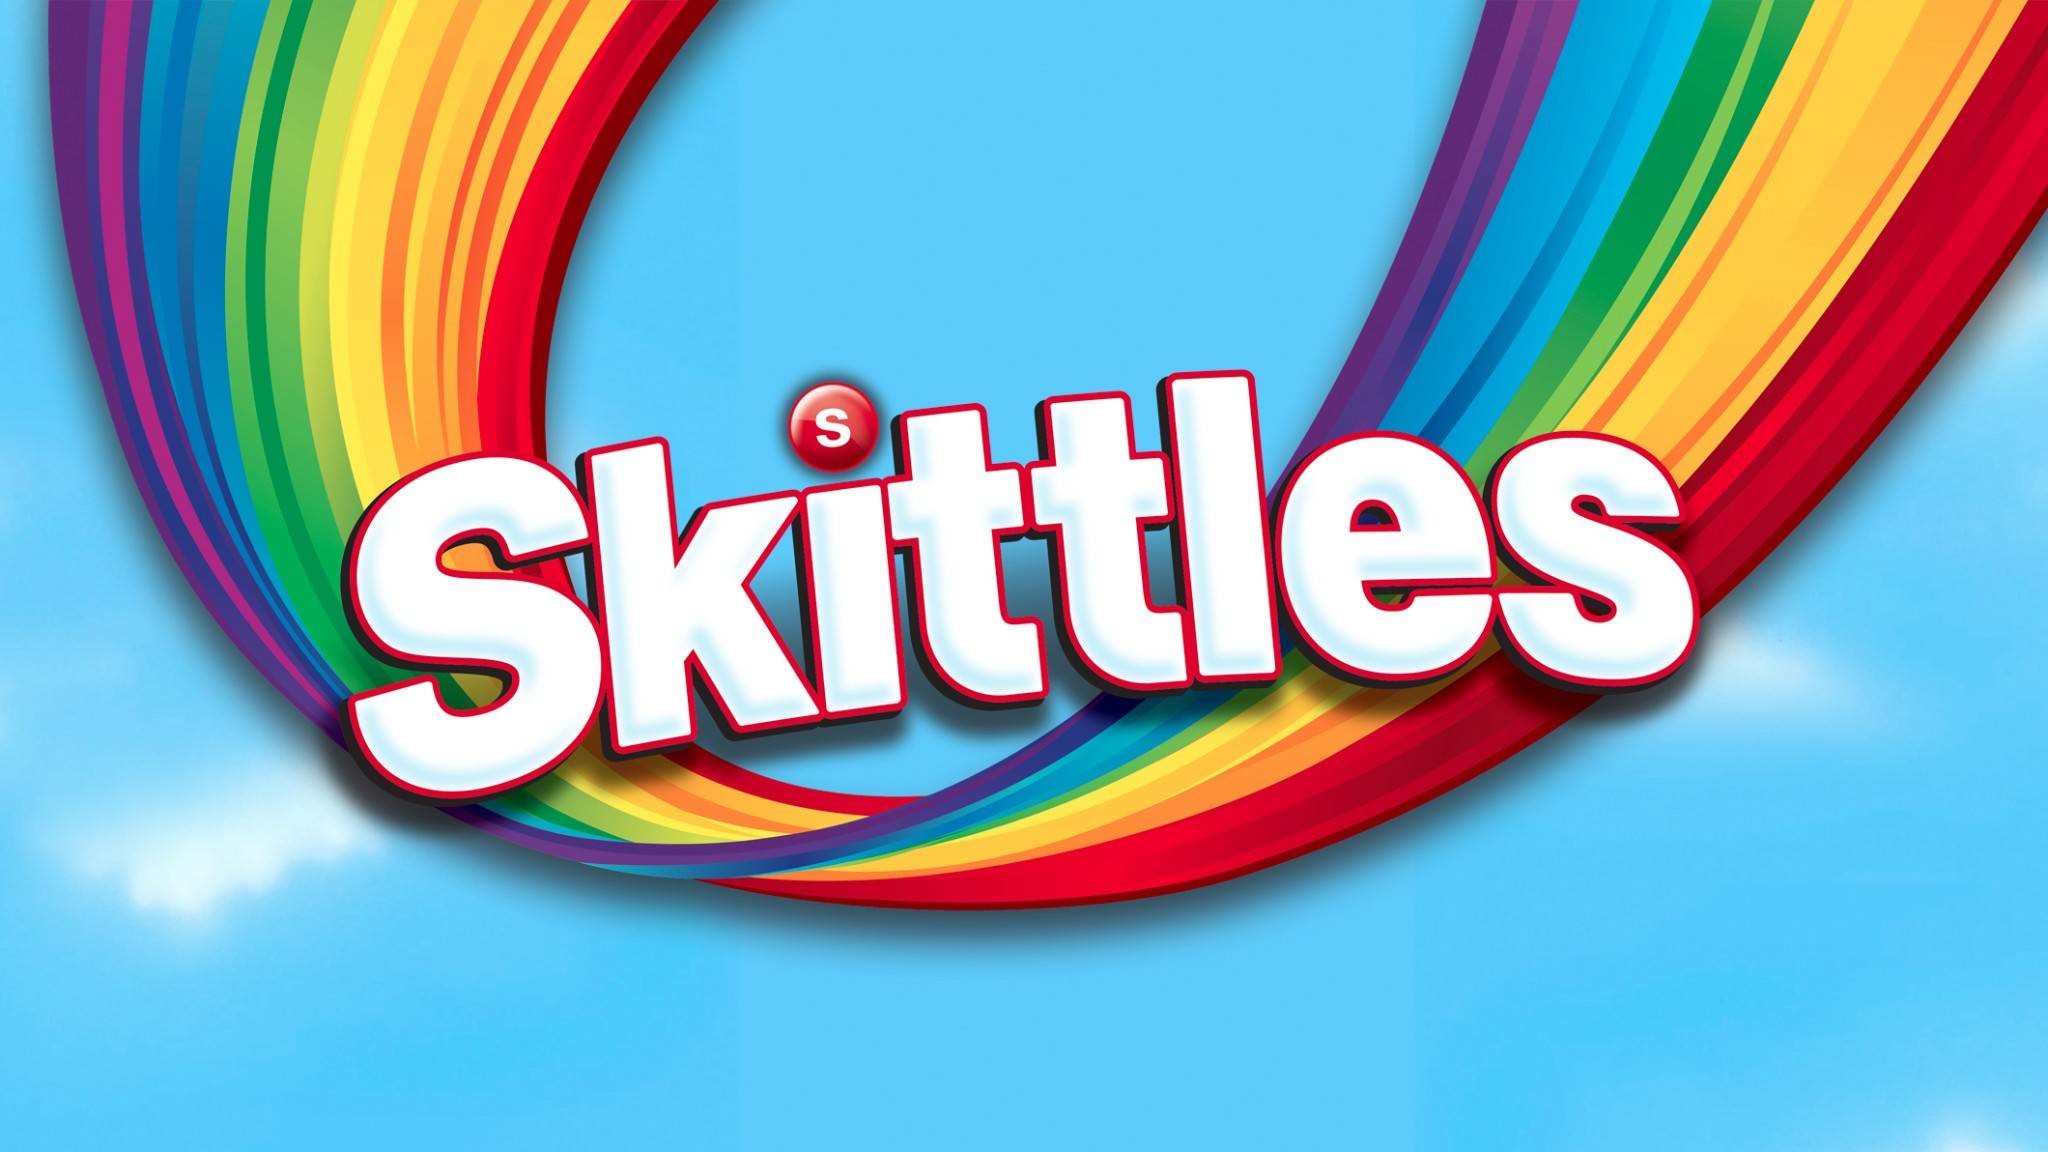 2048x1152 Skittles Wallpapers, 47 Desktop Images Of Skittles | Skittles .